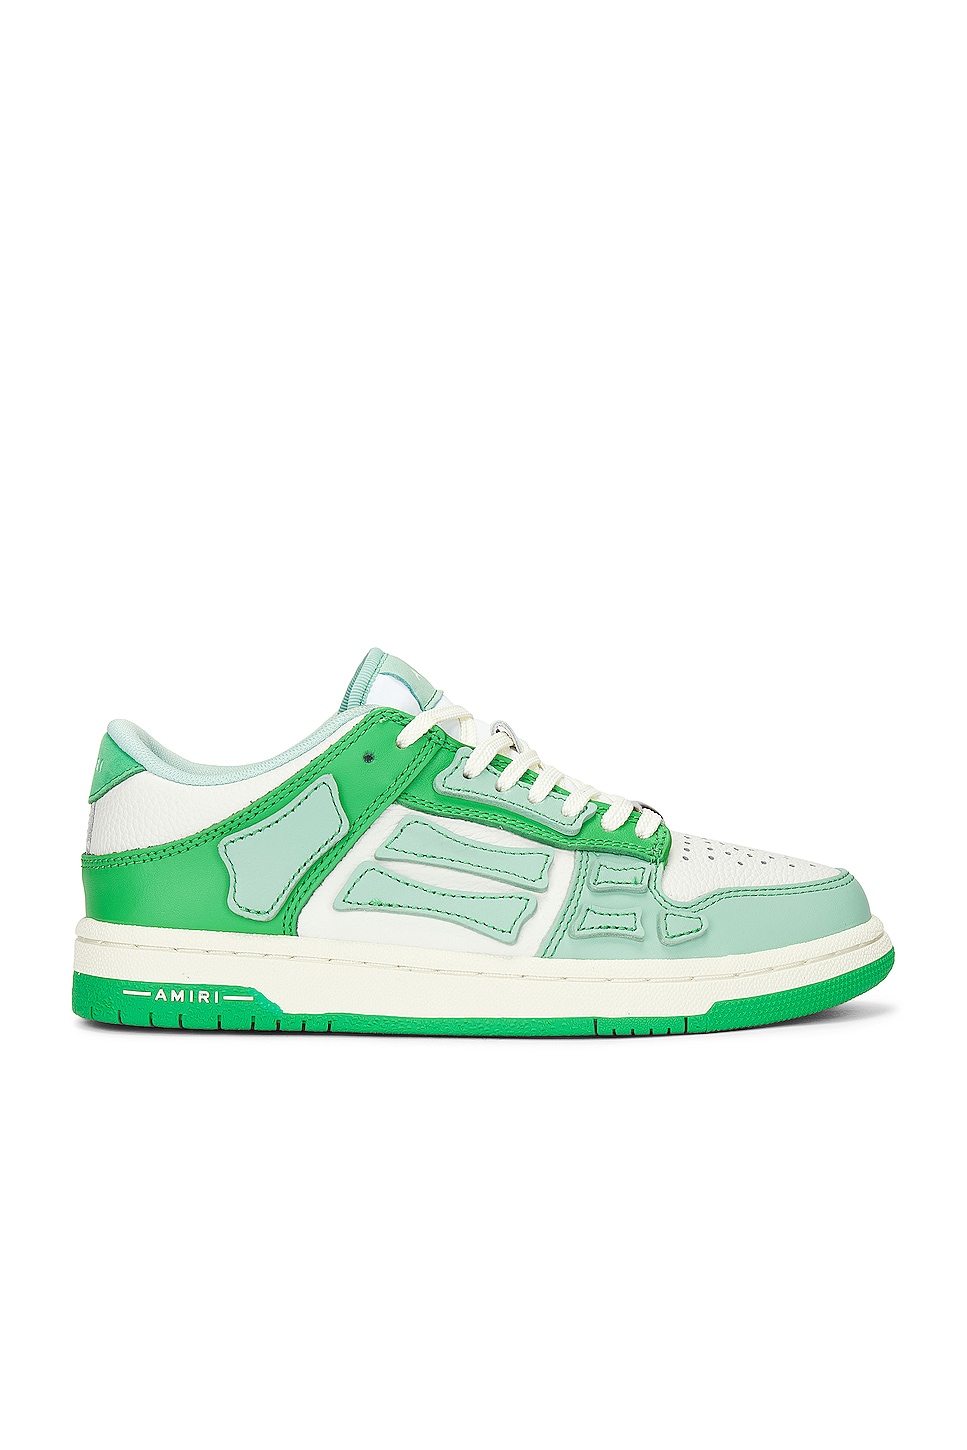 Image 1 of Amiri Skeltop Low Sneaker in Green